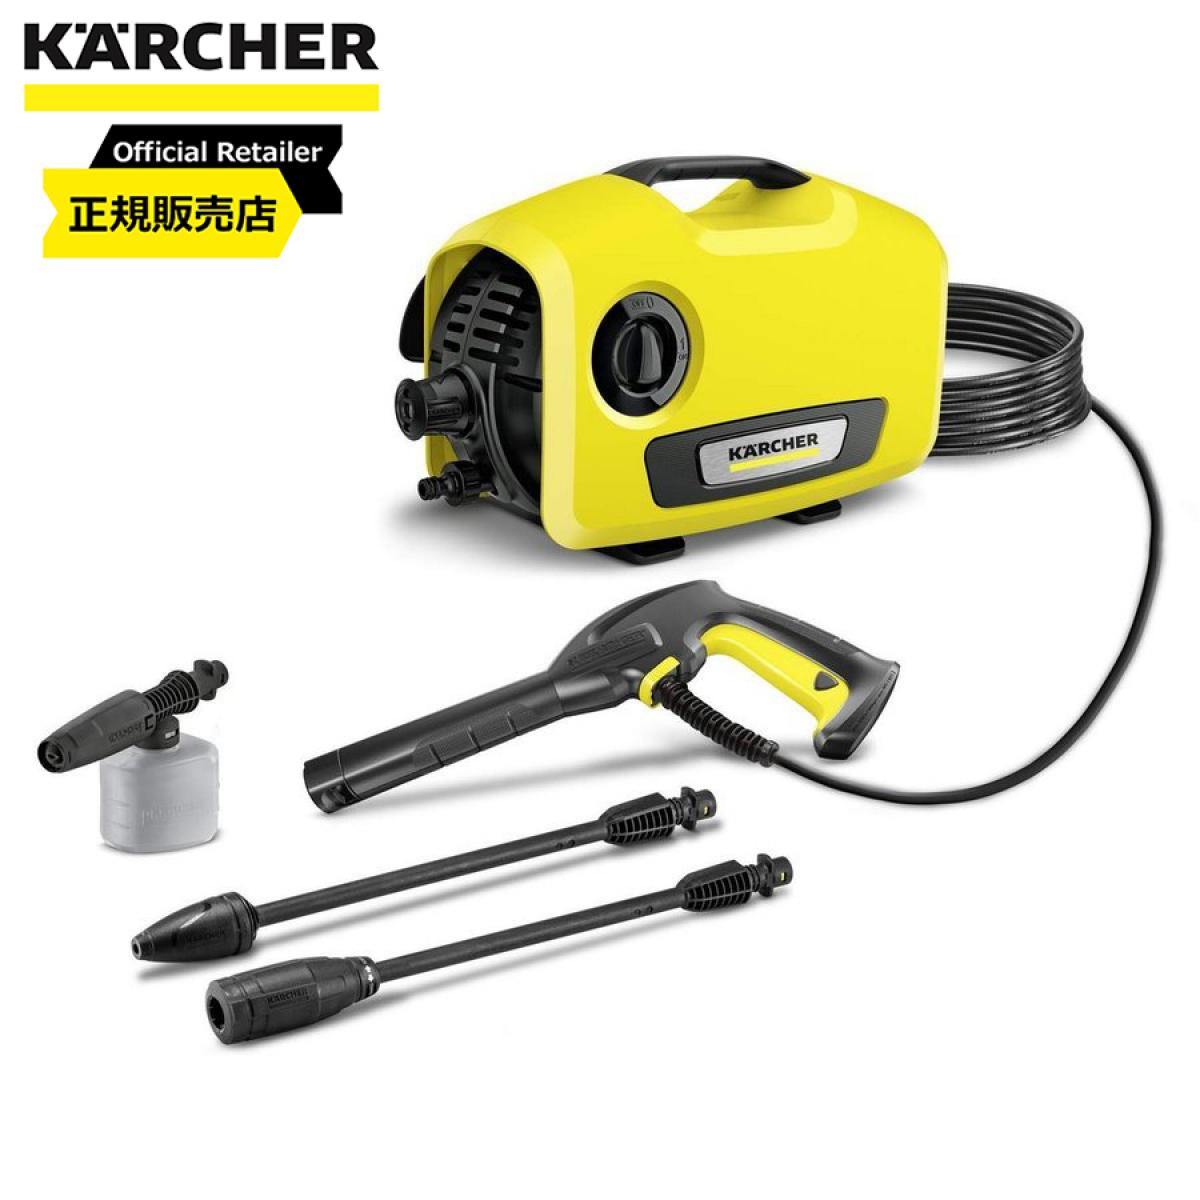   ケルヒャー(KARCHER)  高圧洗浄機  K2 サイレント  1.600-920.0 洗浄機 洗車 水洗い 静音 ヘルツフリー